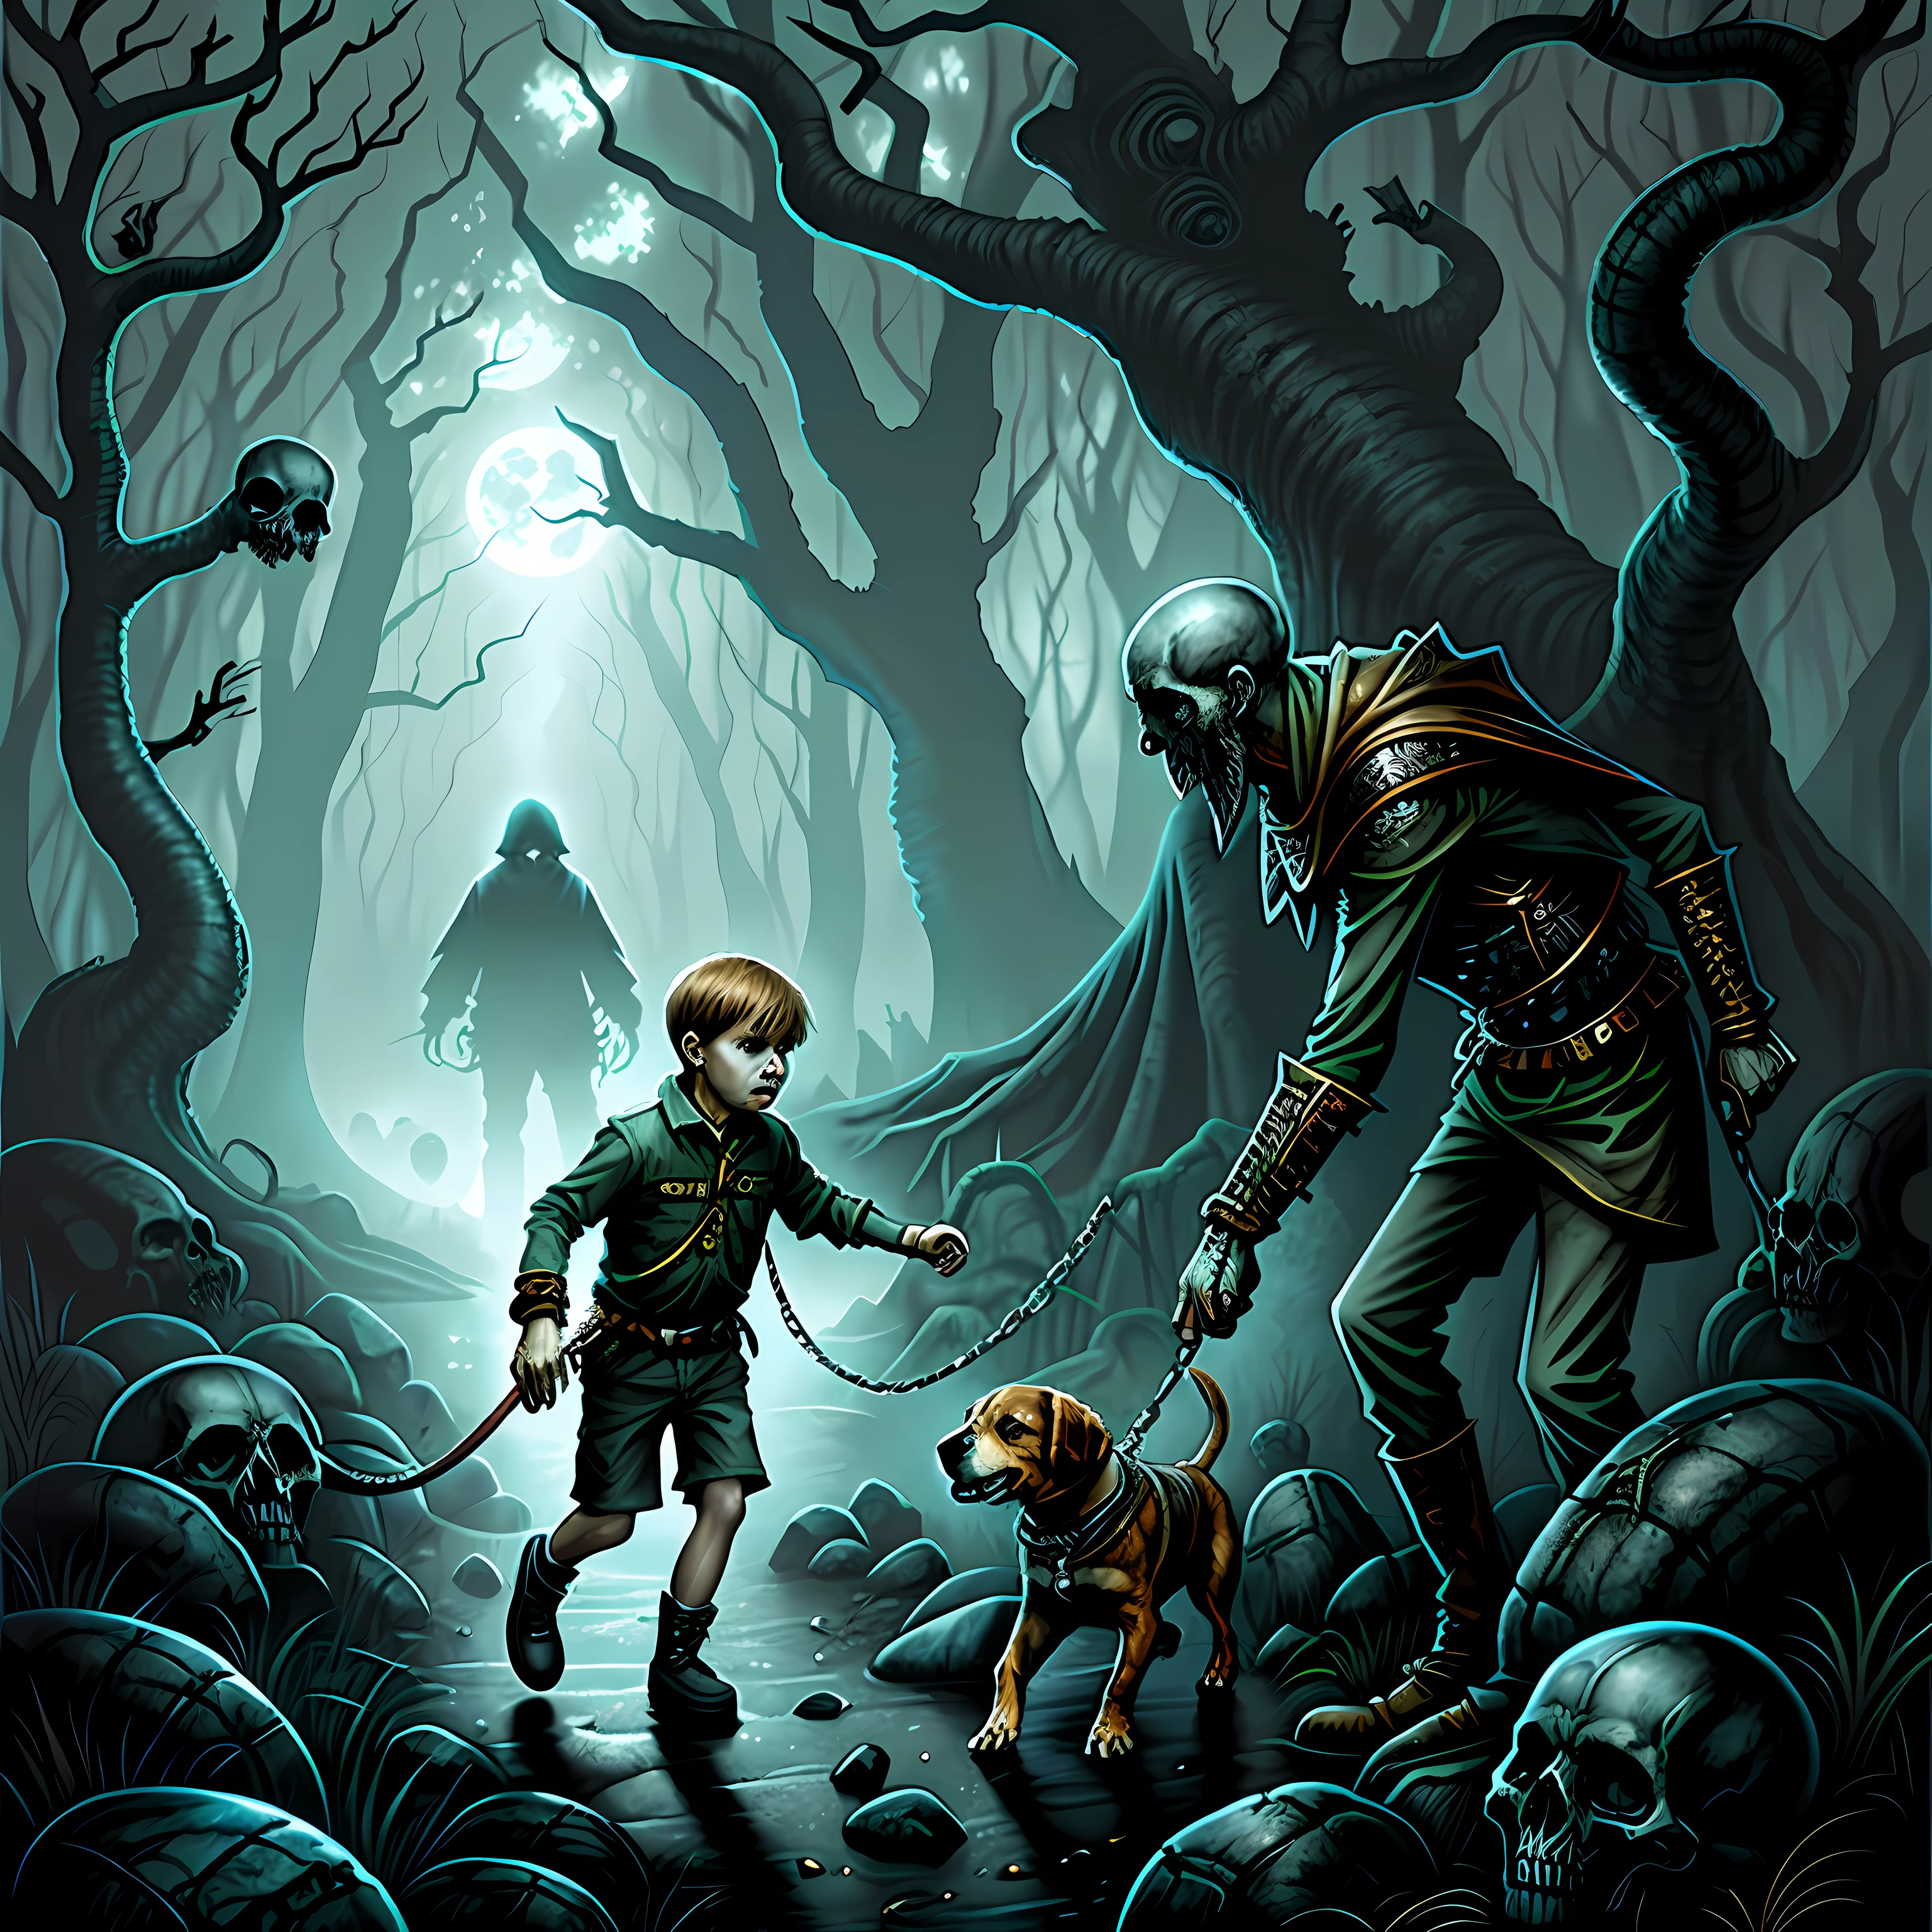 Um menino com um Beagle na coleira atravessando uma floresta assombrada por caveiras e espíritos. arte de terror, surrealismo , hiperdetalhado, desenho colorido, Ilustração de Dan Seagrave.